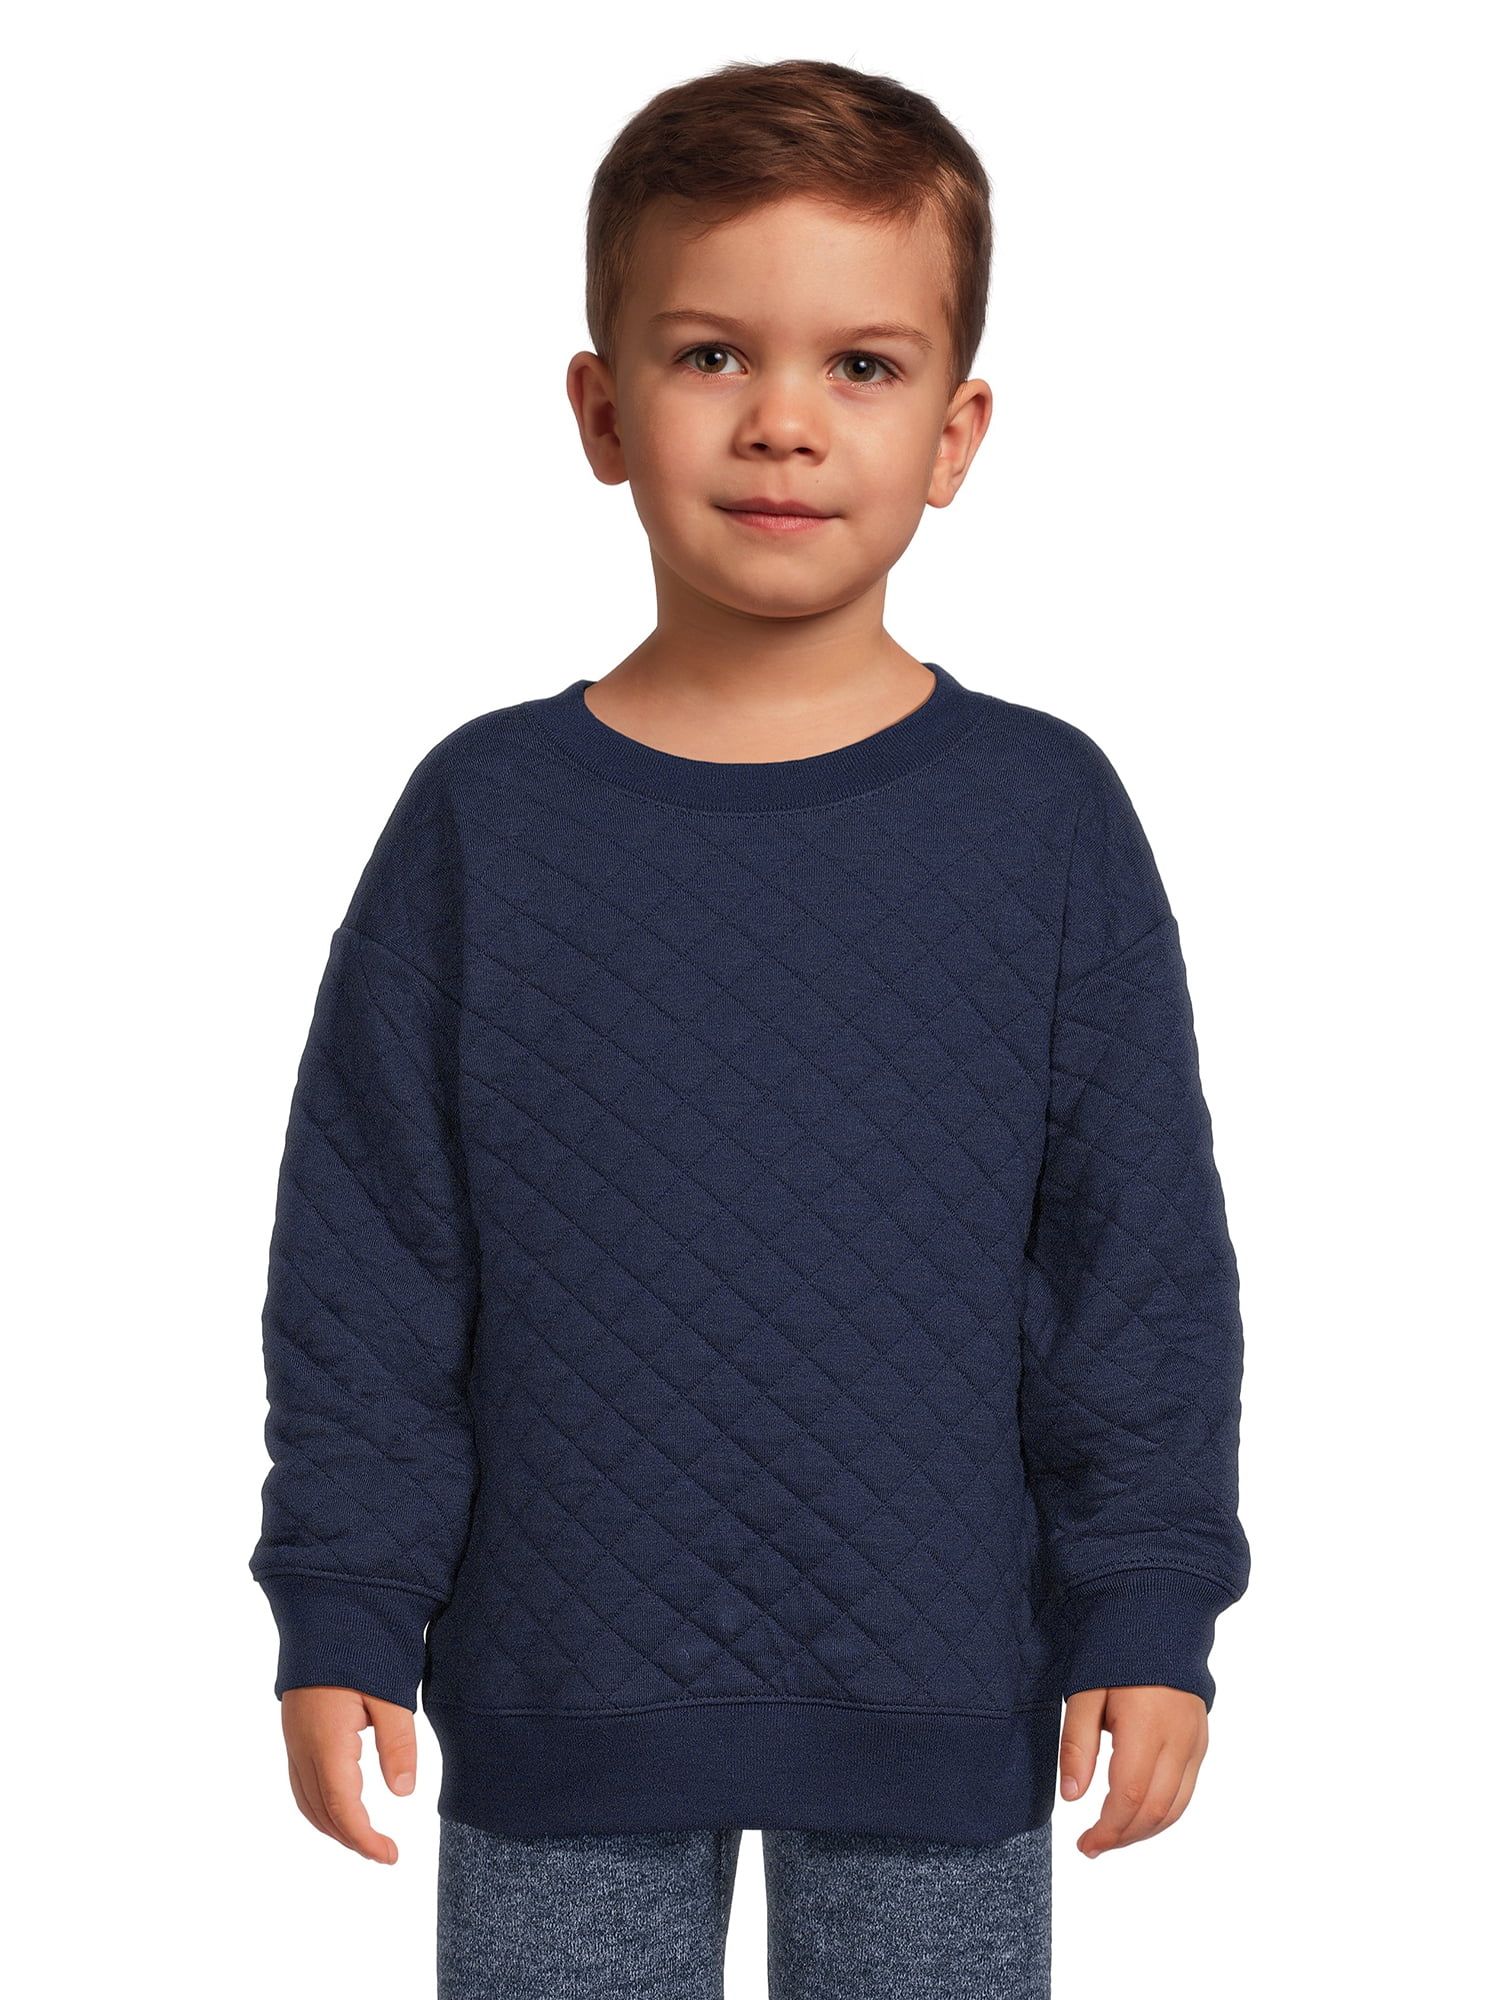 Garanimals Toddler Boy Quilted Pullover Top, Sizes 12 M-5T | Walmart (US)